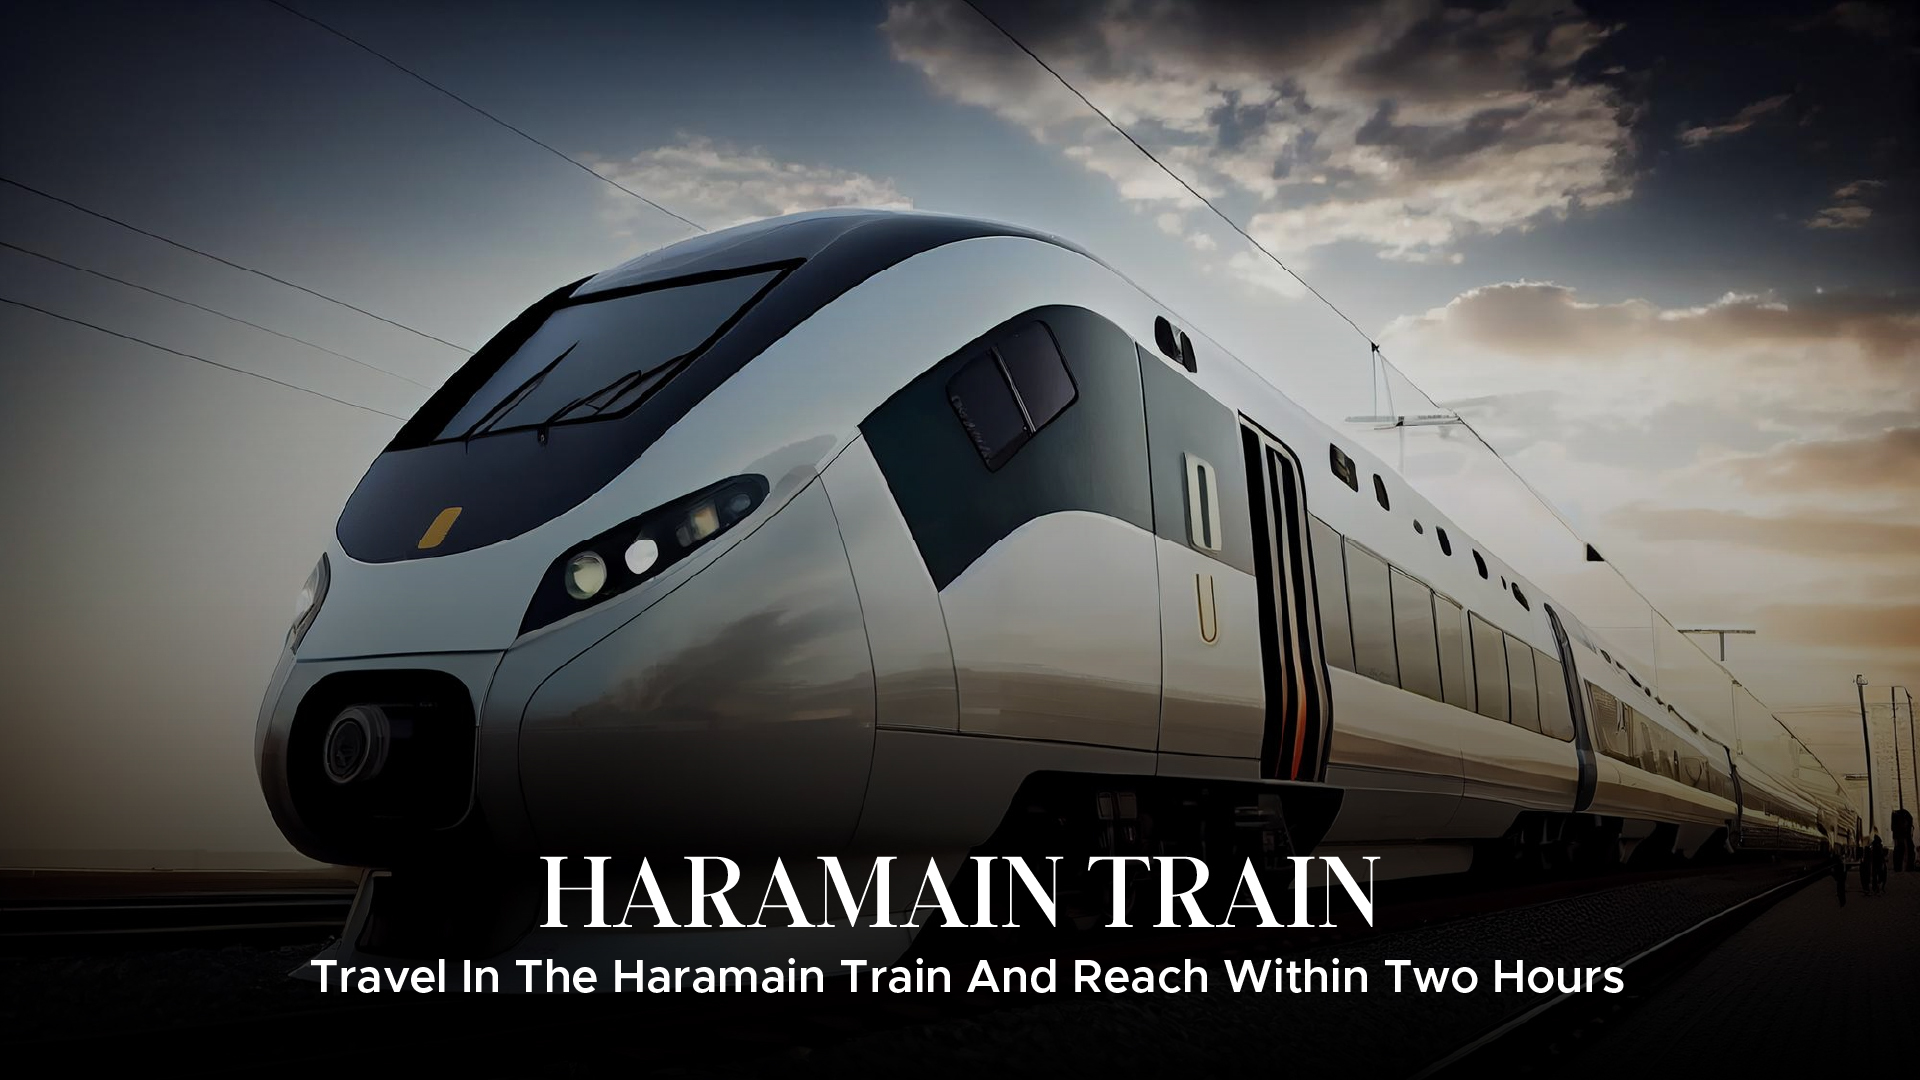 Travel in Haramain train